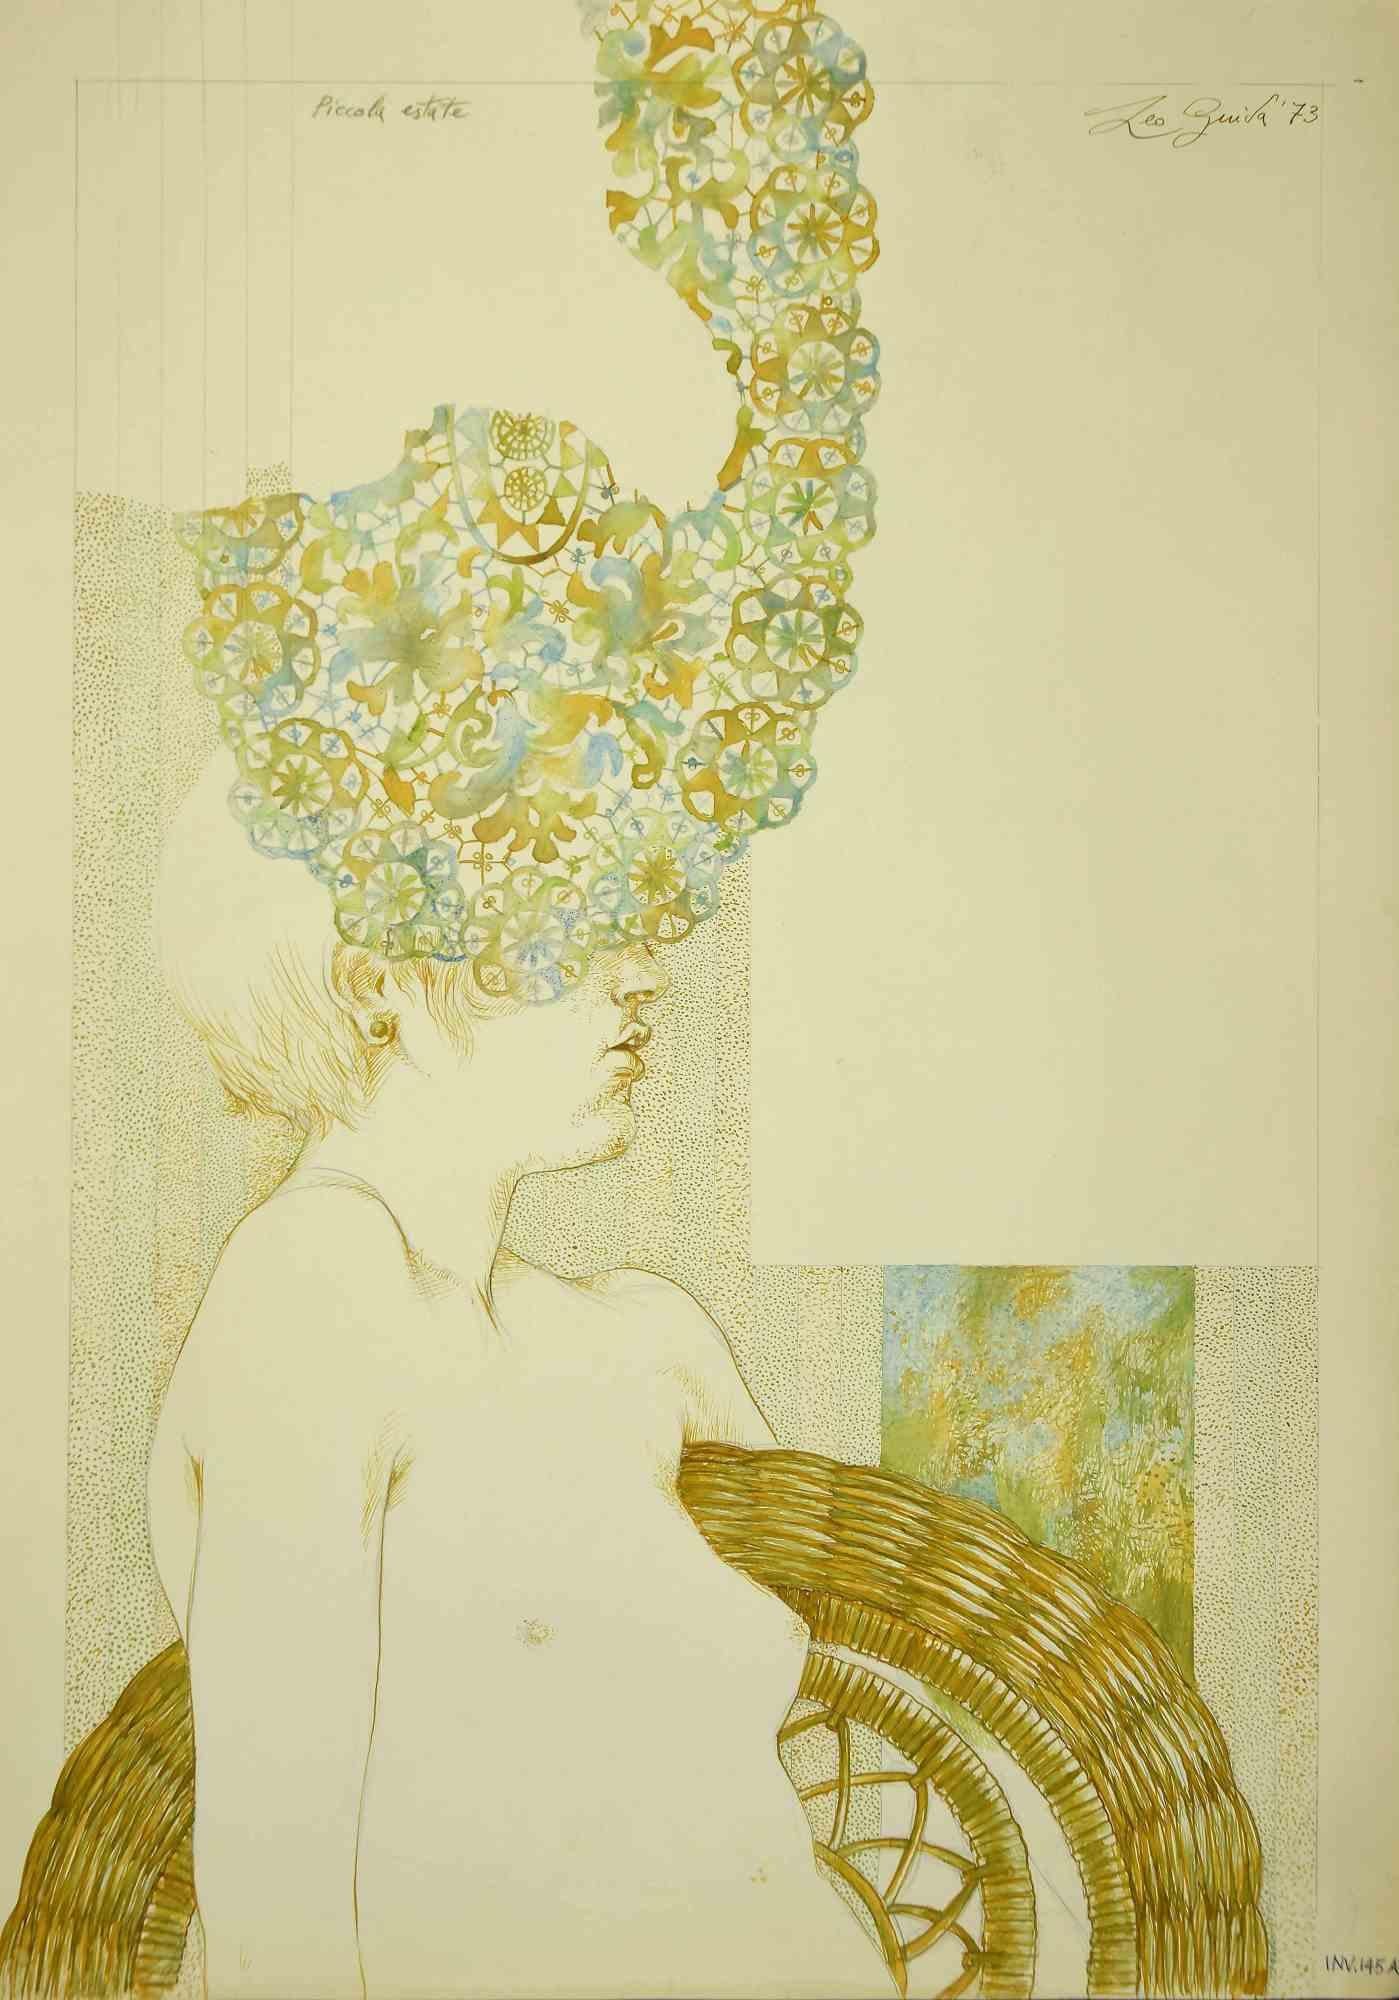 Little Summer ist eine Zeichnung in Aquarell und Tusche von Leo Guida aus dem Jahr 1973.

Guter Zustand.

Handsigniert.

Das Kunstwerk wird durch kräftige Striche in harmonischen Farben dargestellt.